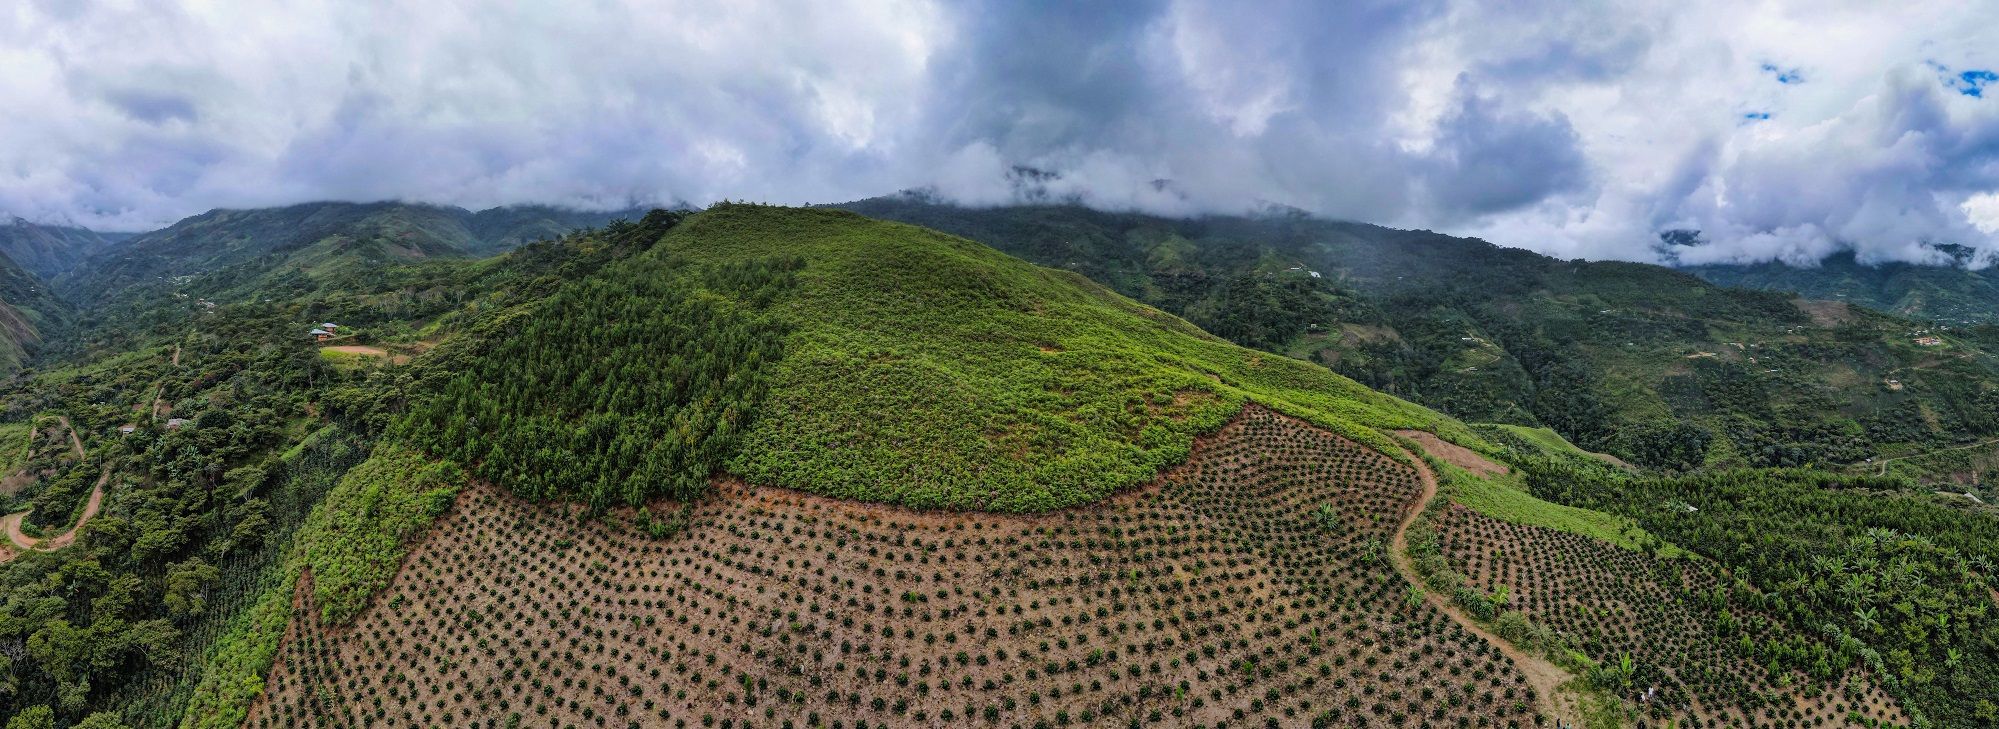 Peru Coffee Field